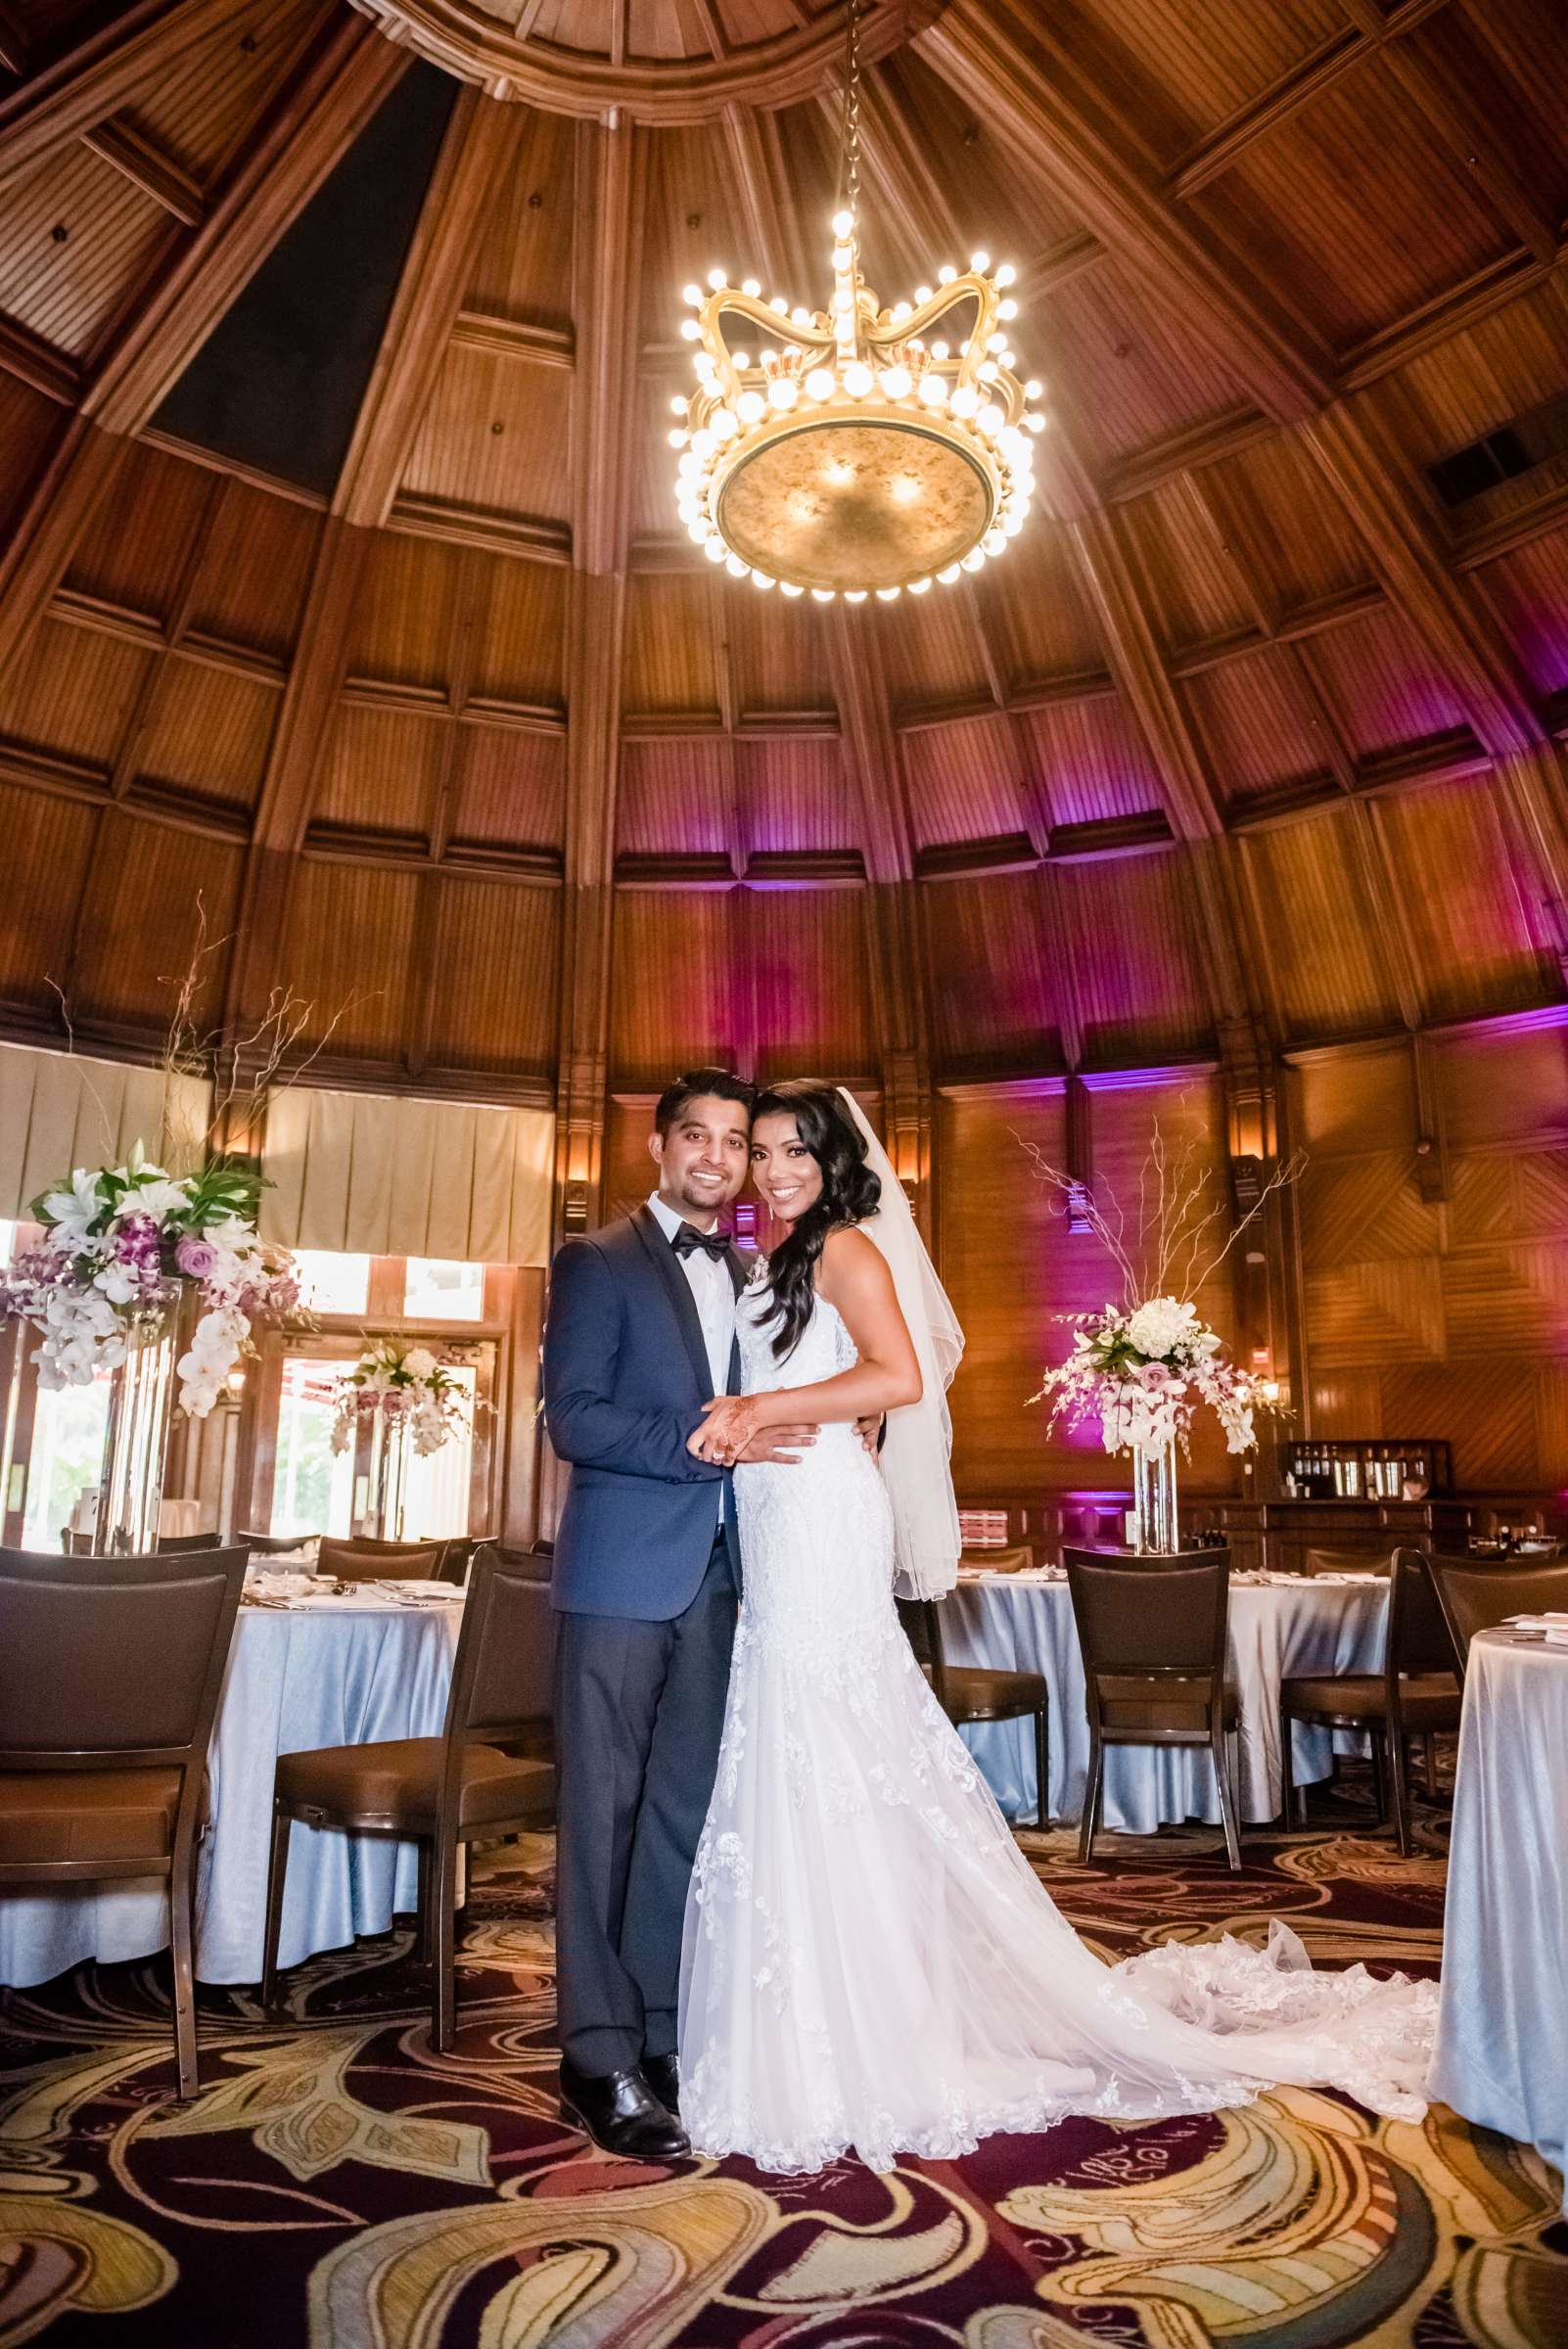 Hotel Del Coronado Wedding, Sabrina and Gehaan Wedding Photo #409078 by True Photography